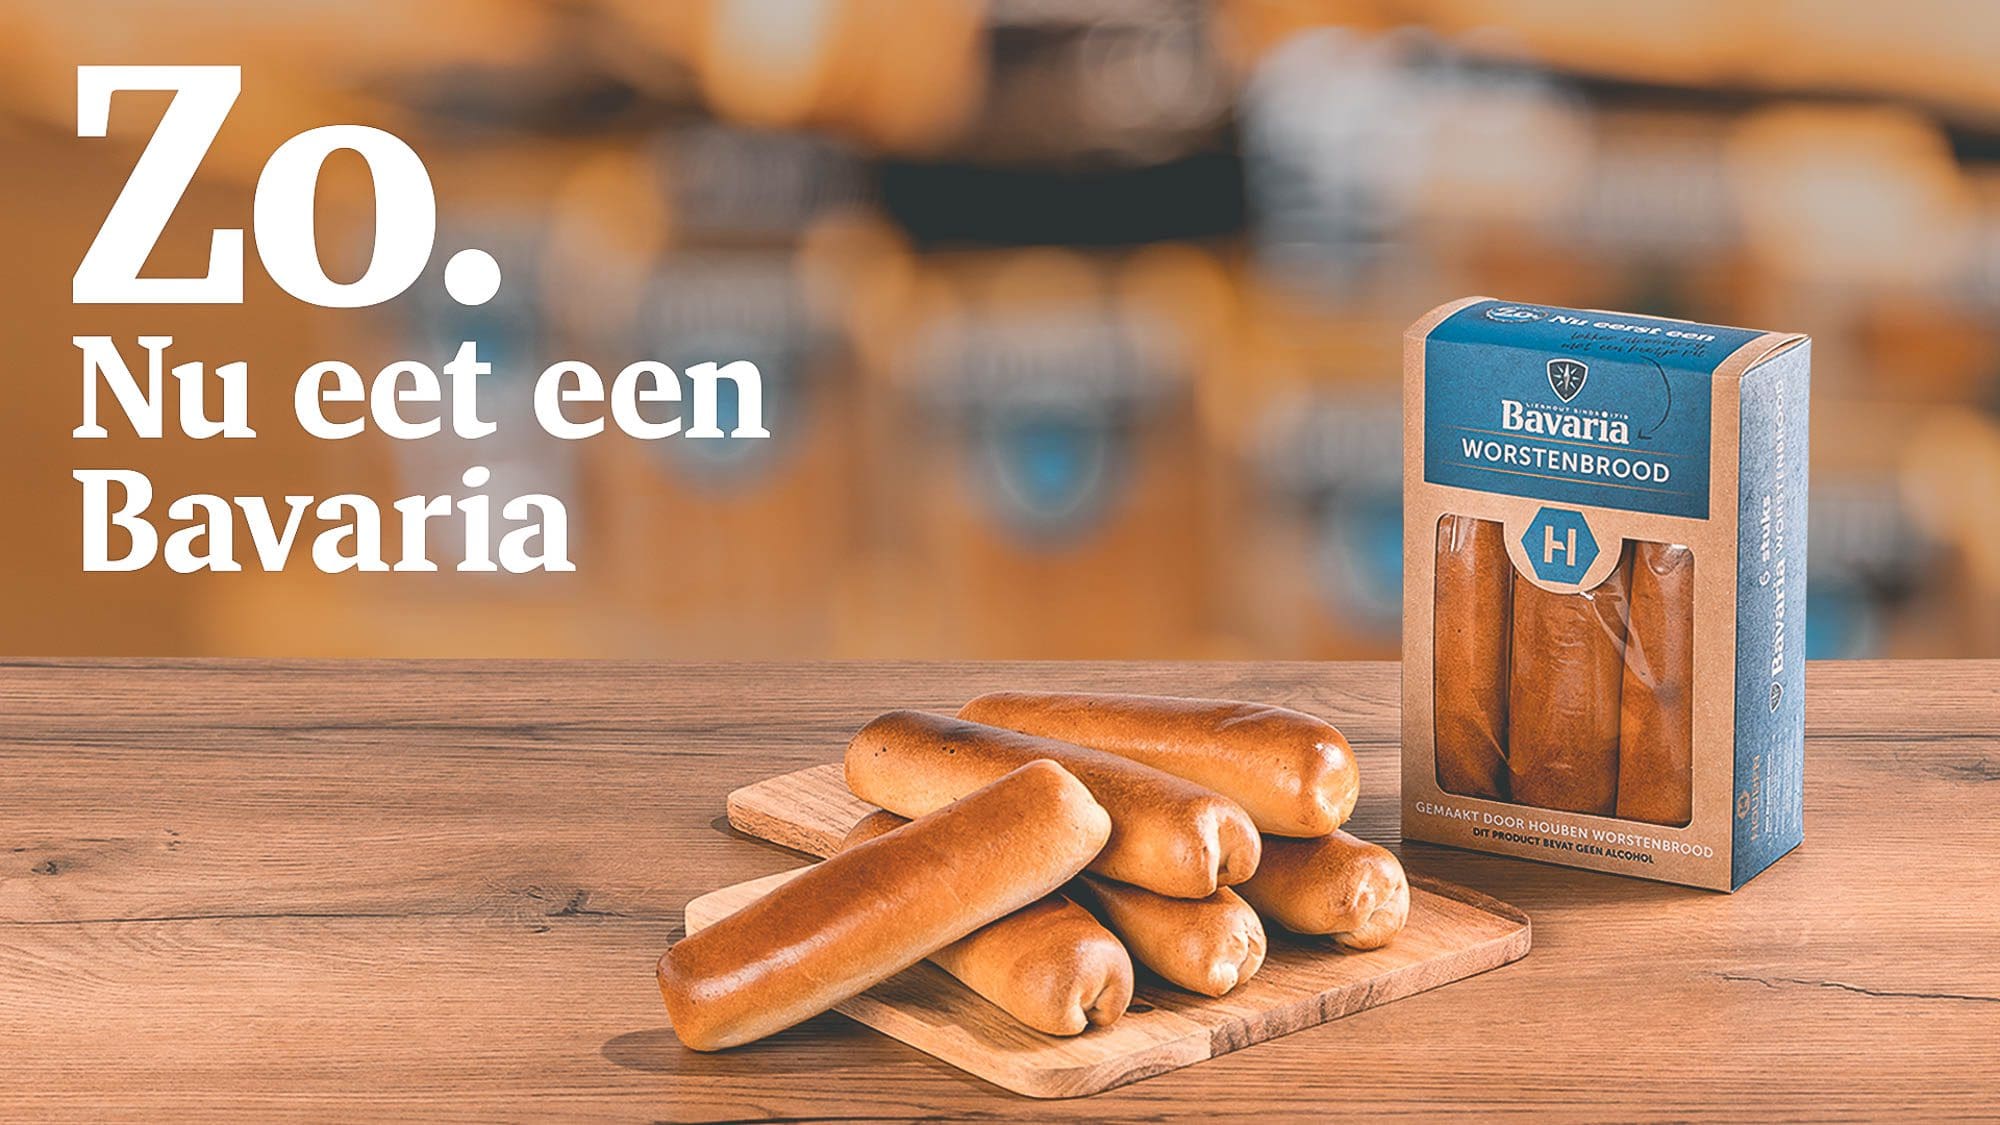 , Beste sixpack ooit: Bavaria-worstenbrood met bier